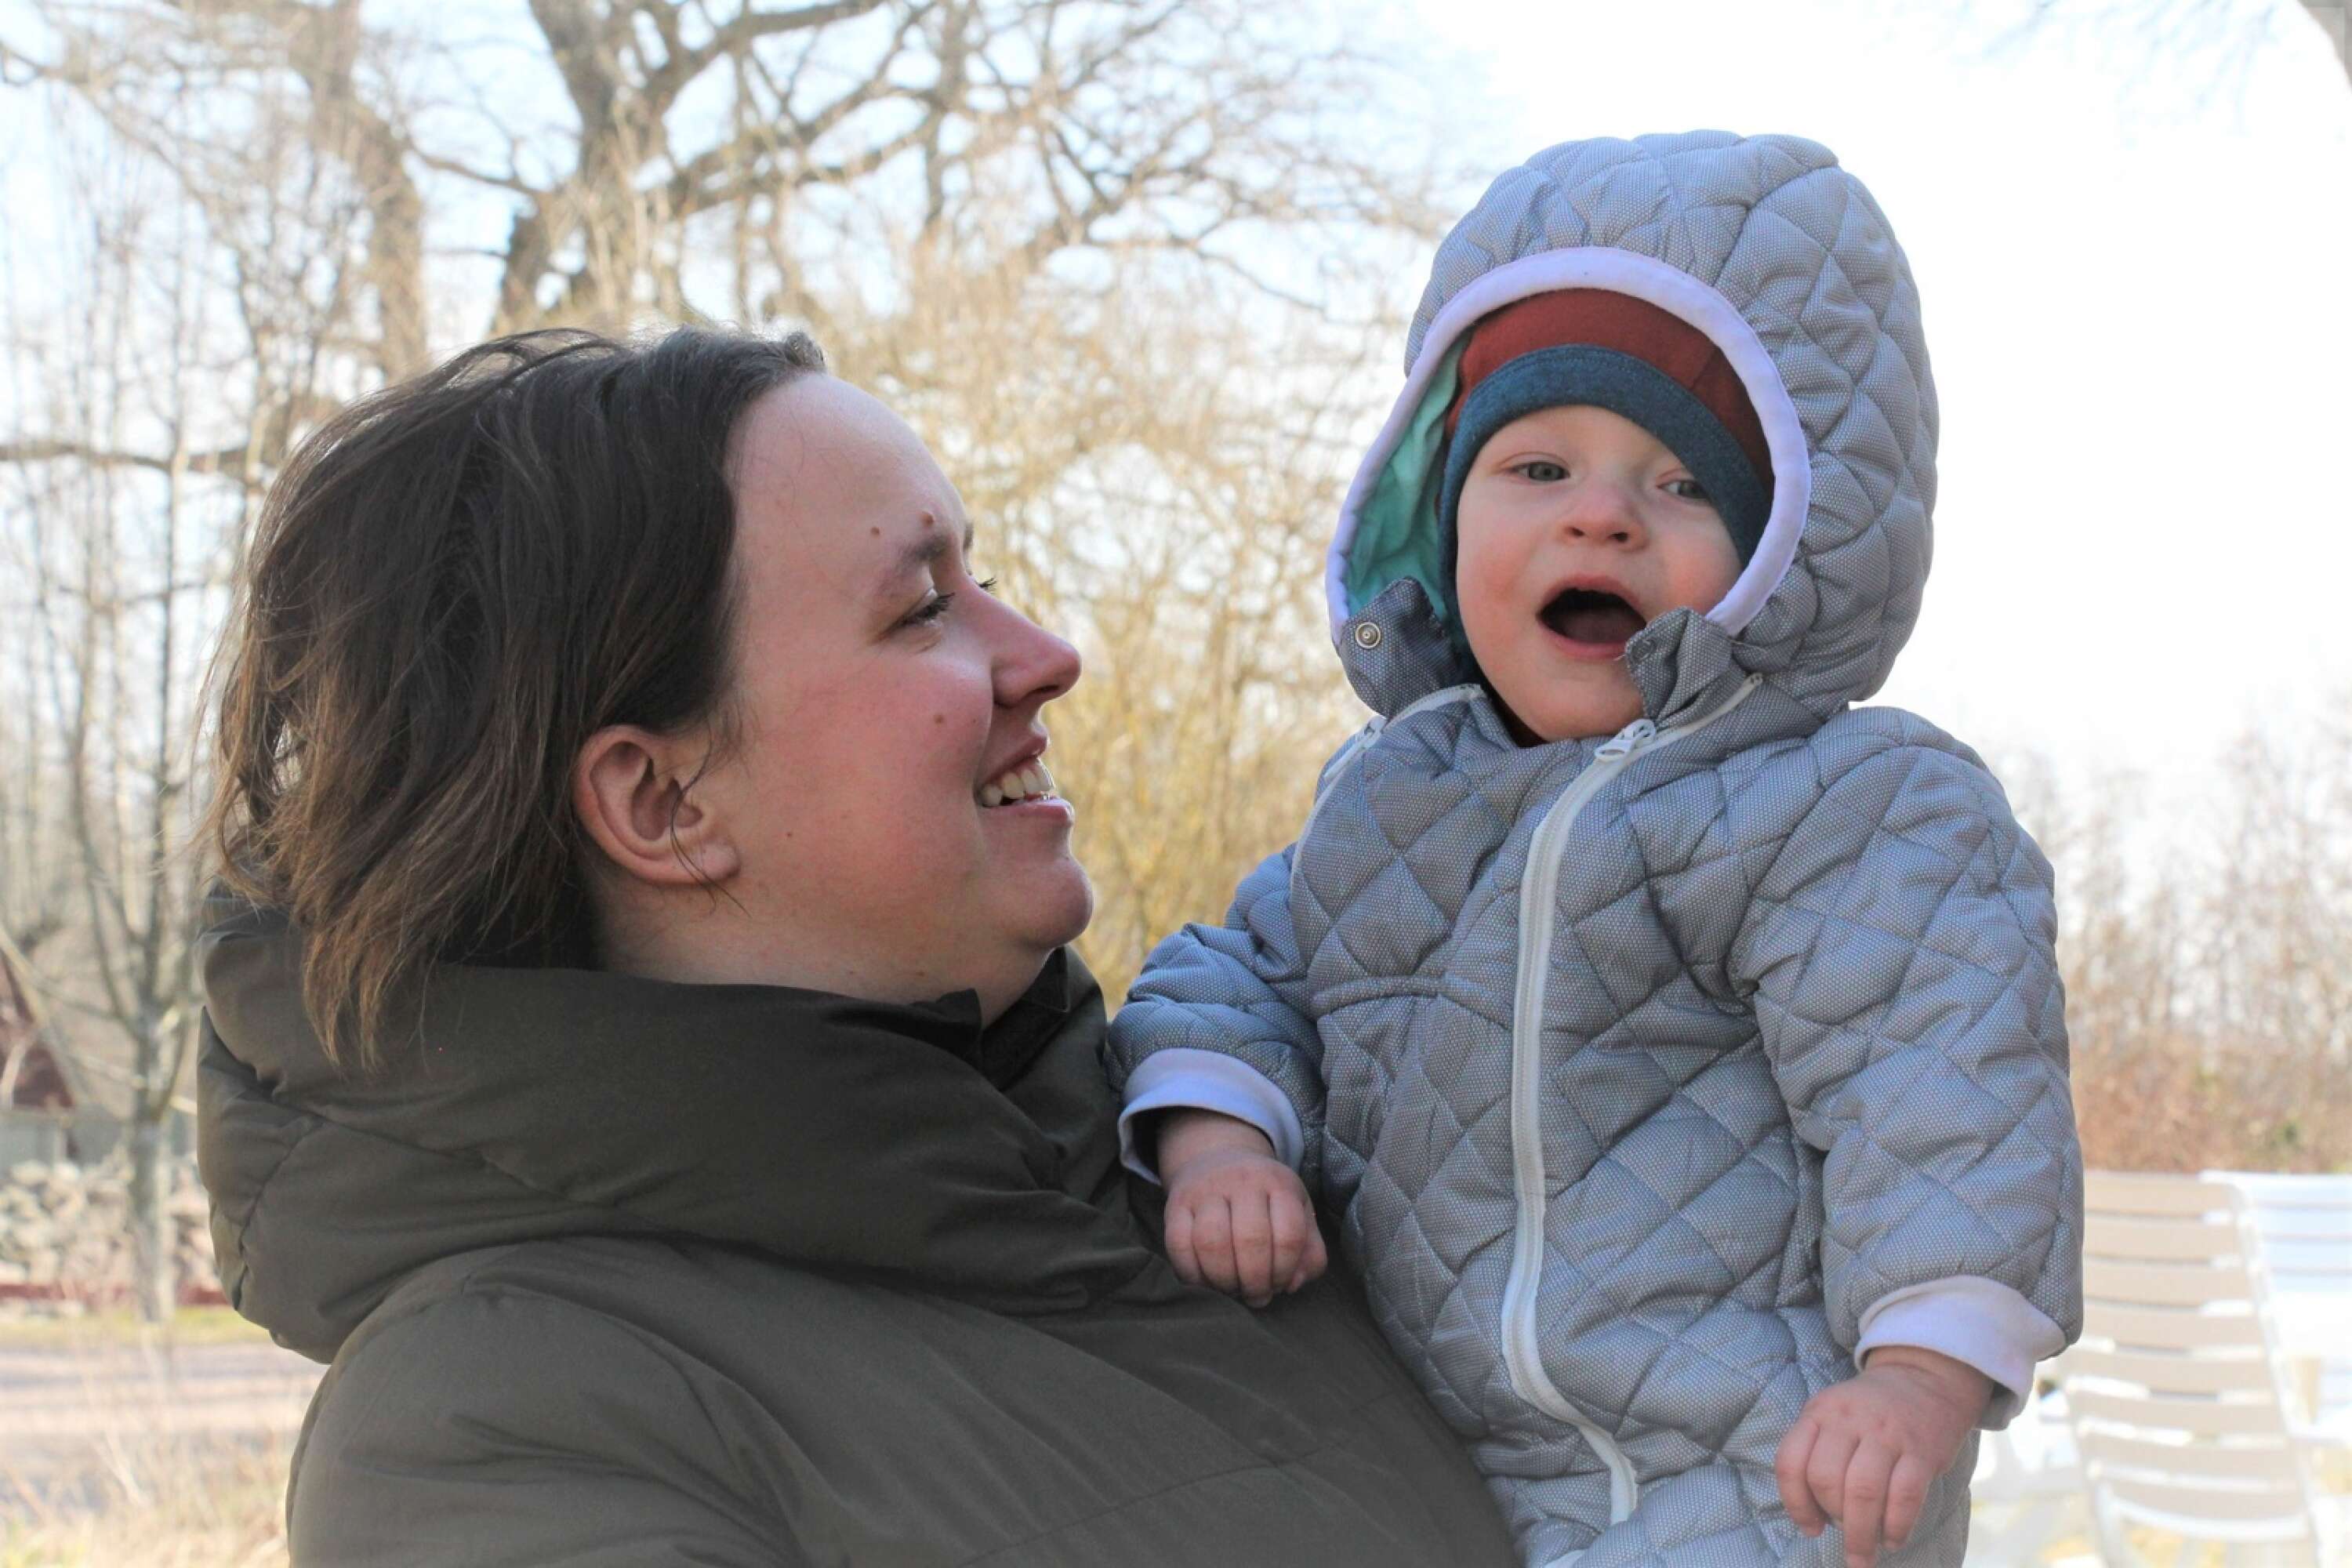 ”Jag är bara lycklig över att mitt barn är tryggt. Ingen människa ska behöva gå igenom detta”, säger Vasylyna, 24 år, om flykten från Ukraina till Sverige.